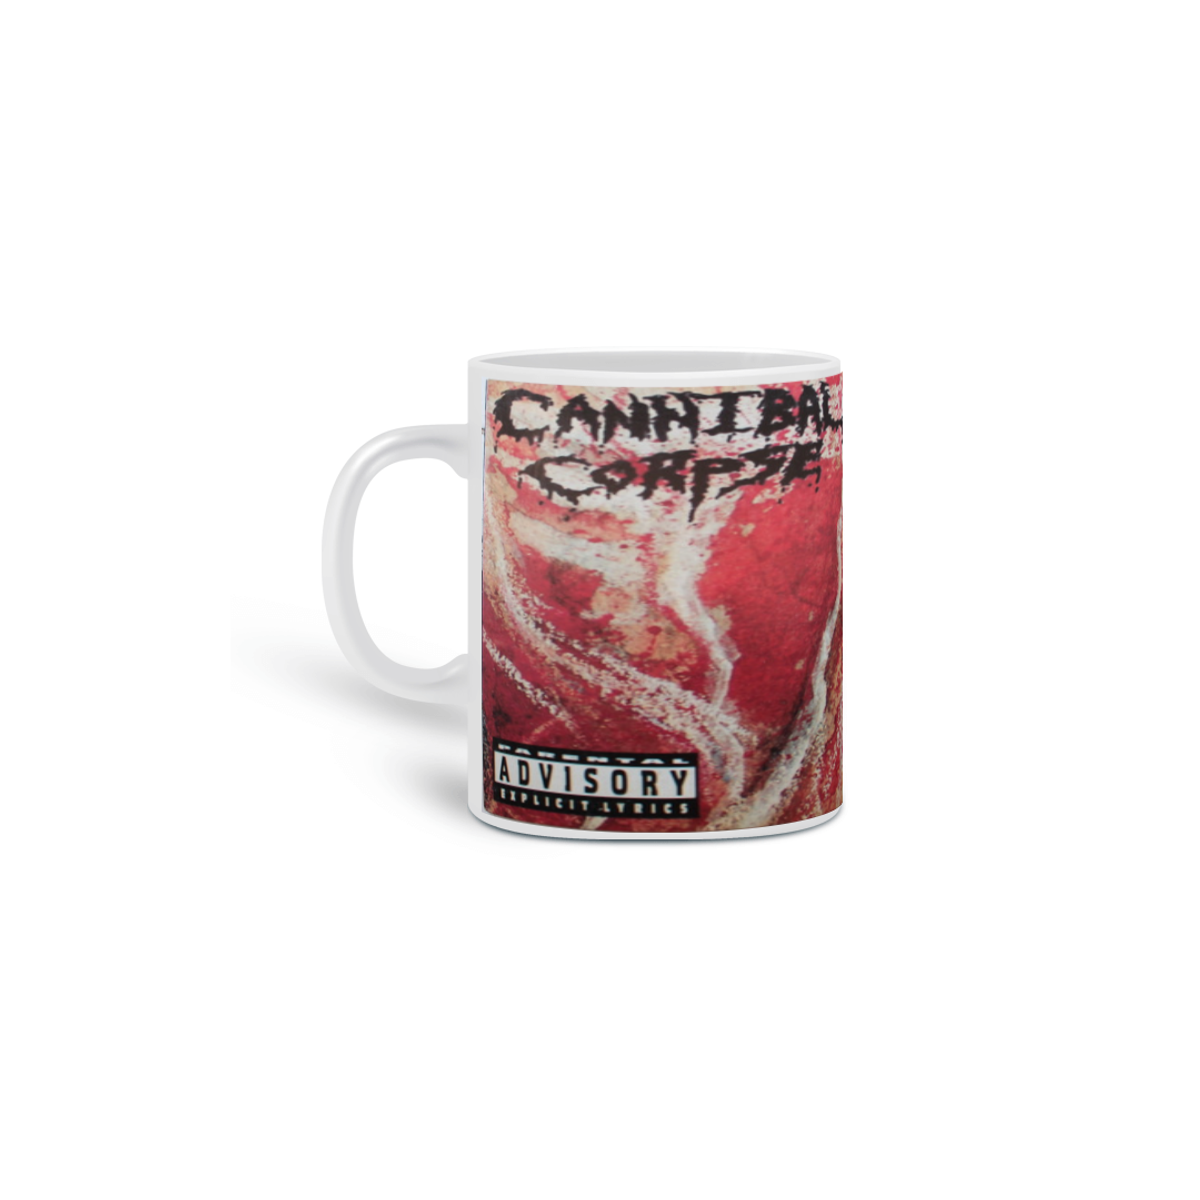 Nome do produto: Cannibal Corpse - The Bleeding